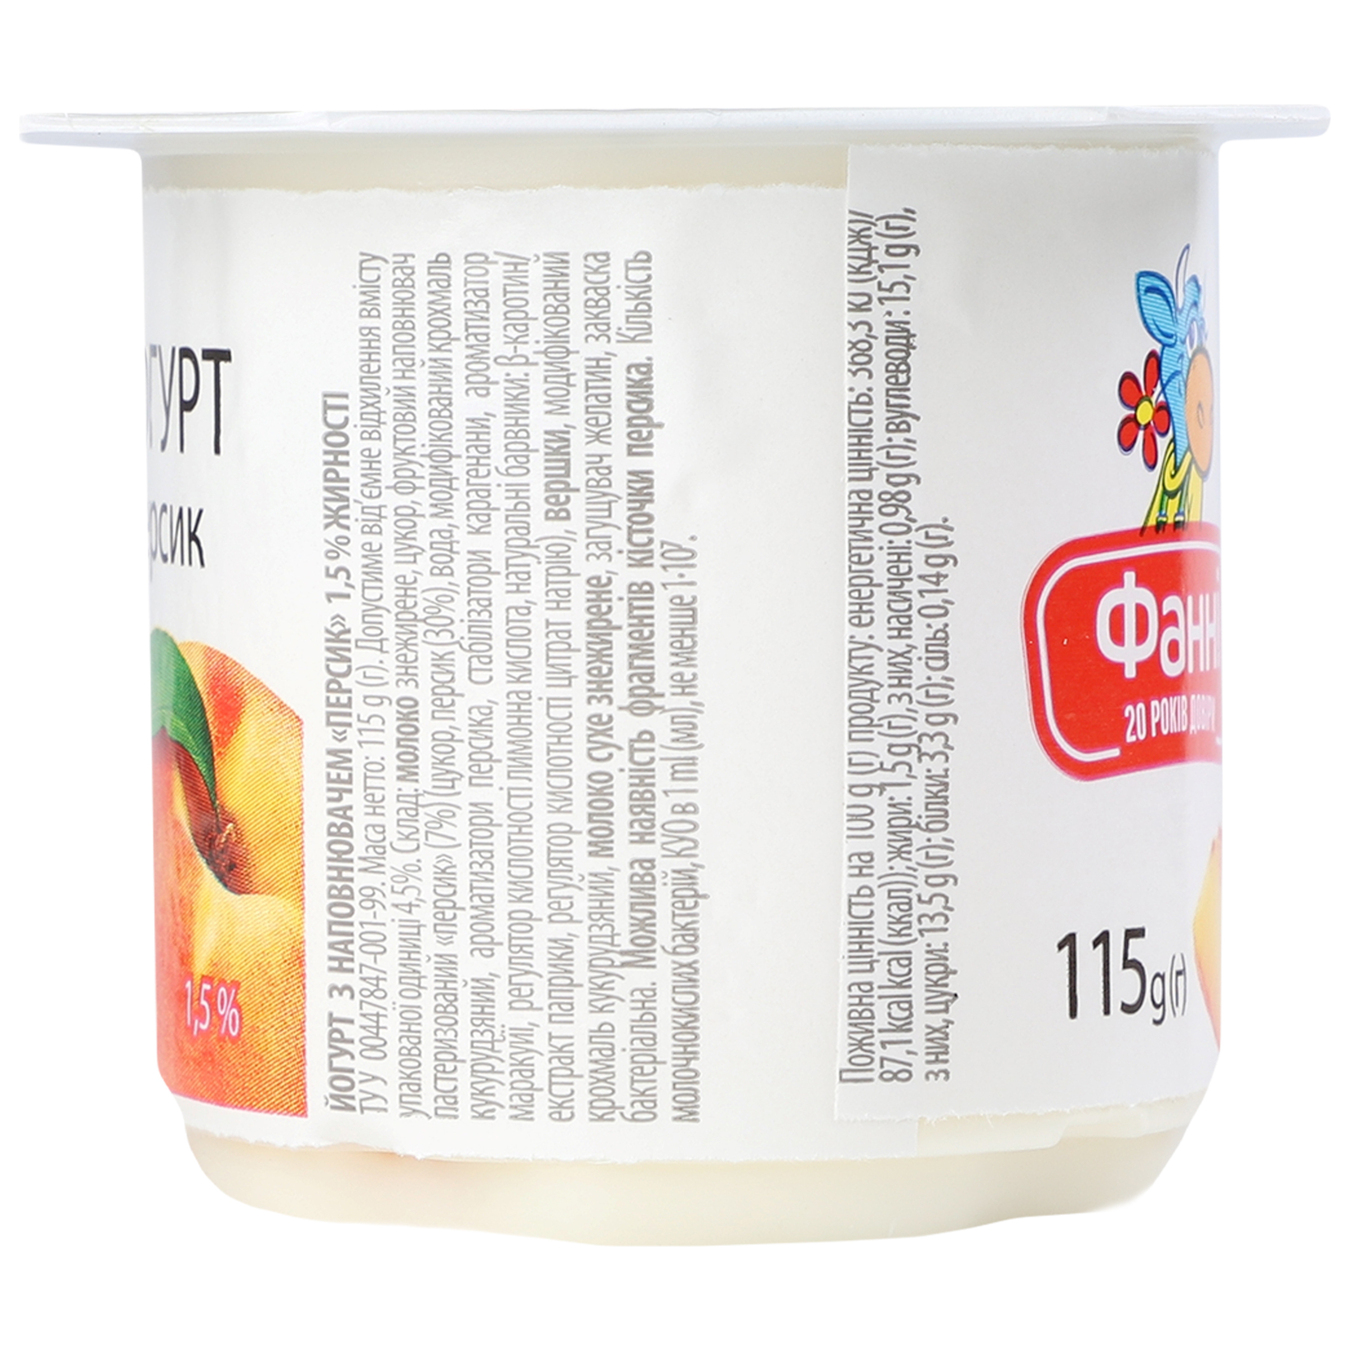 Йогурт Фанні з наповнювачем персик стаканчик 1,5% 115г 5